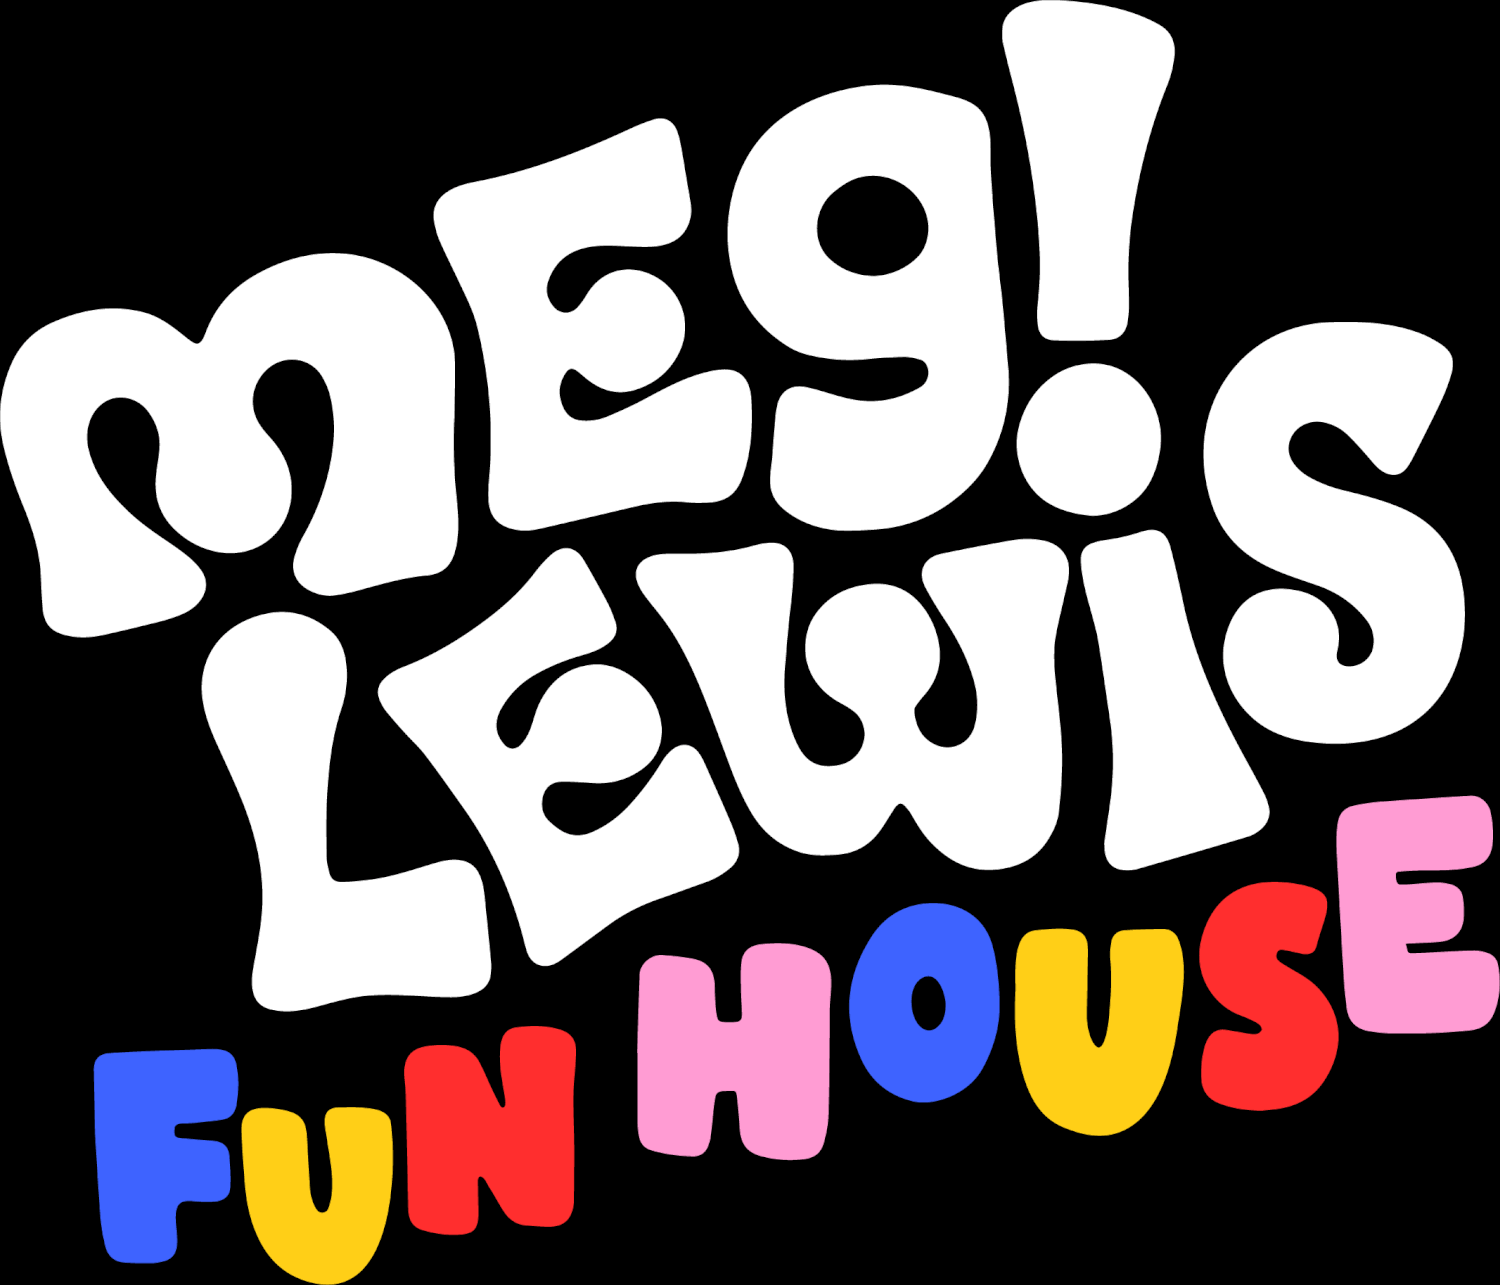 The Meg Lewis Fun House!